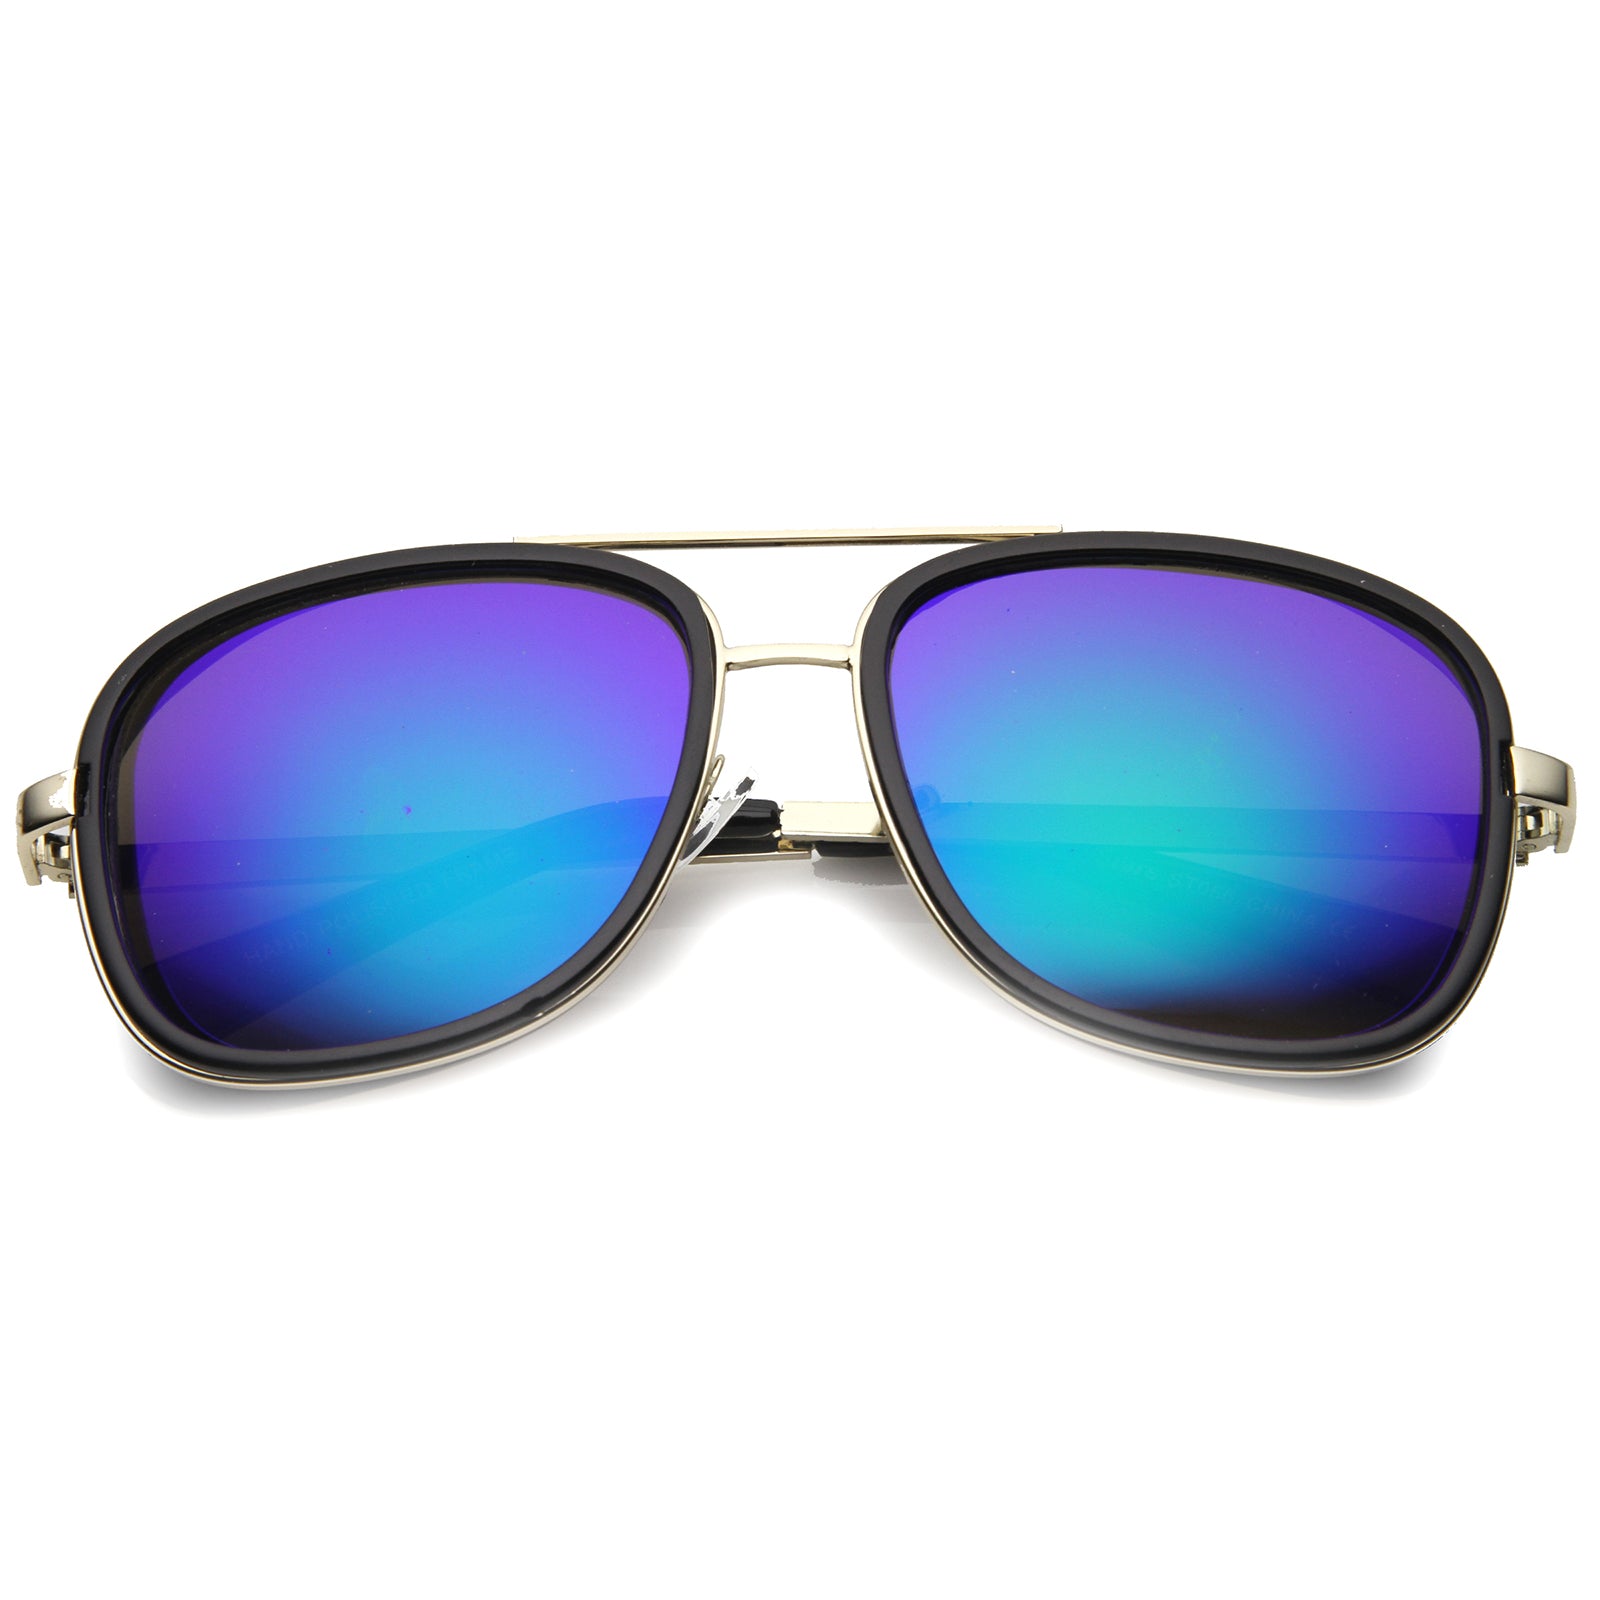 Gafas de sol estilo aviador con lentes espejadas y cubierta lateral cuadrada 9896